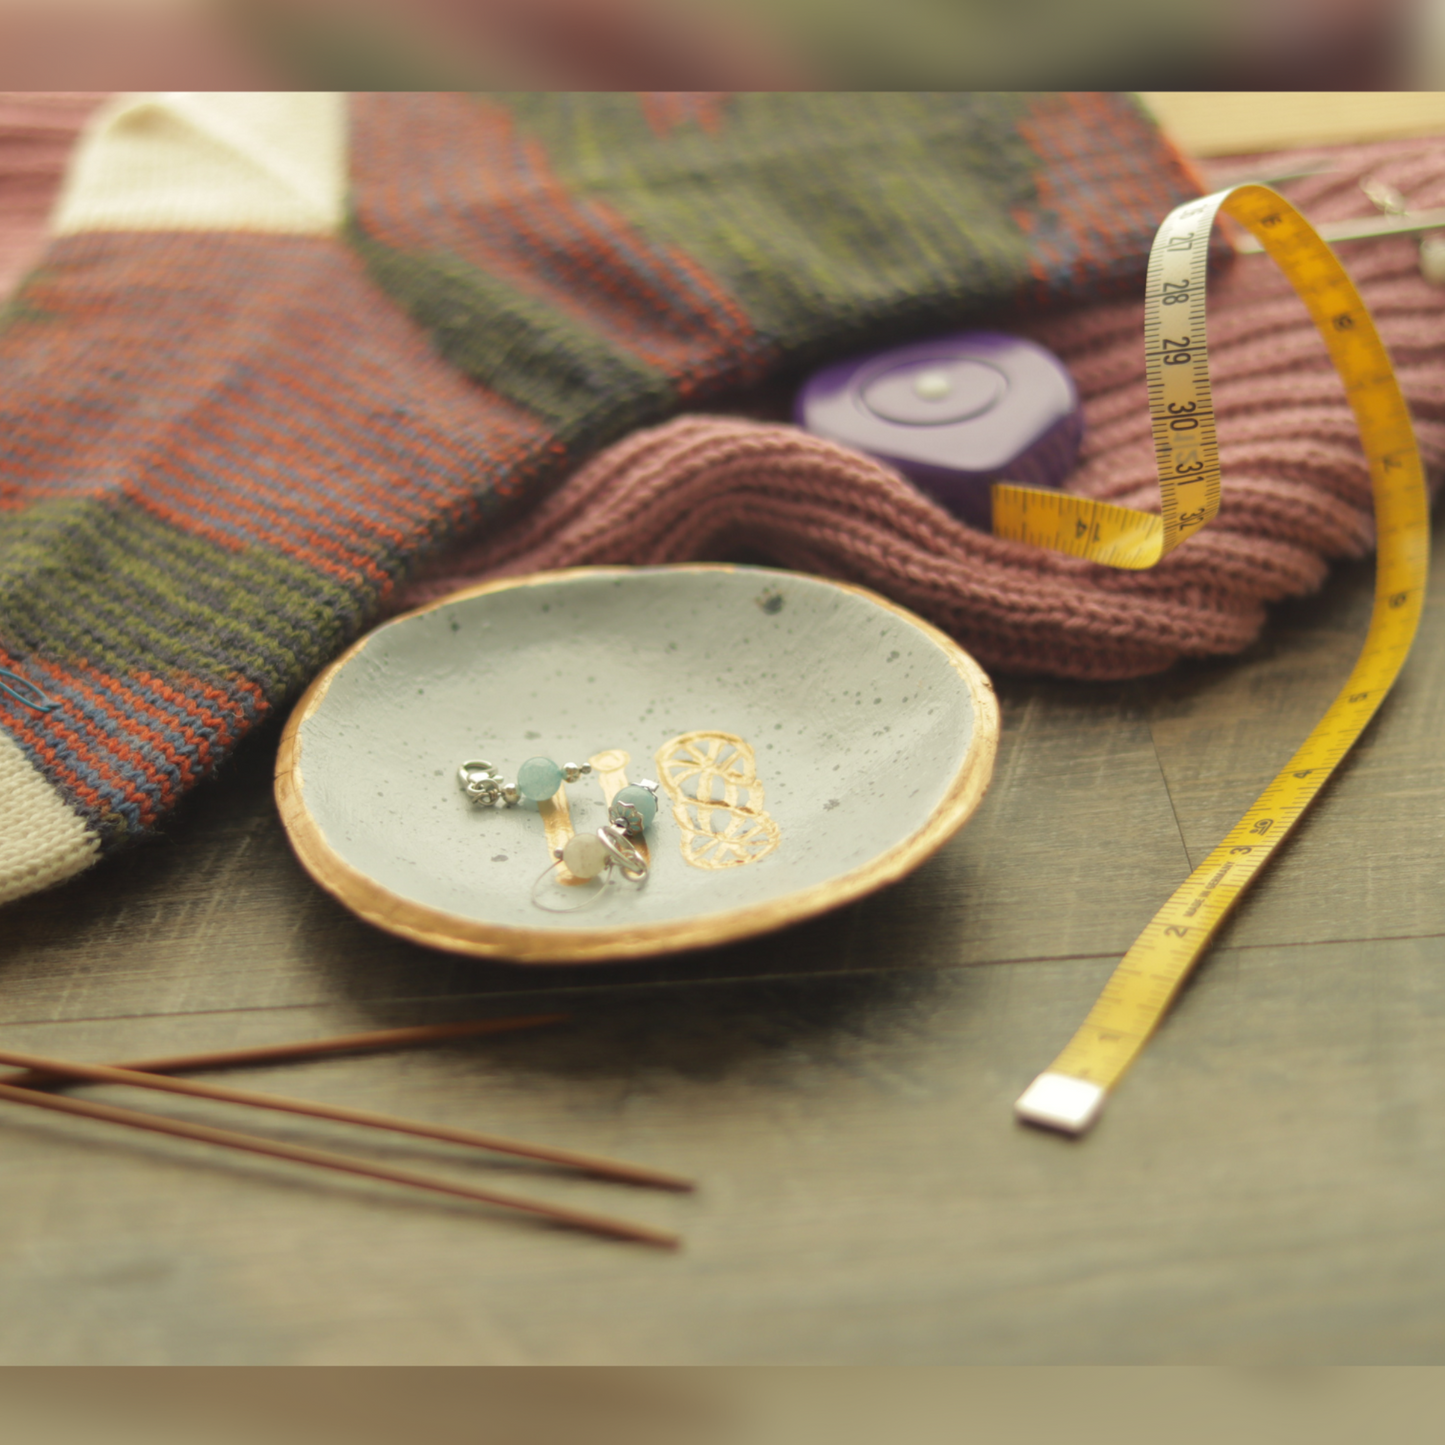 Yarn & Knitting Needle Dish - Stitch Marker Organizer & Jewelry Dish